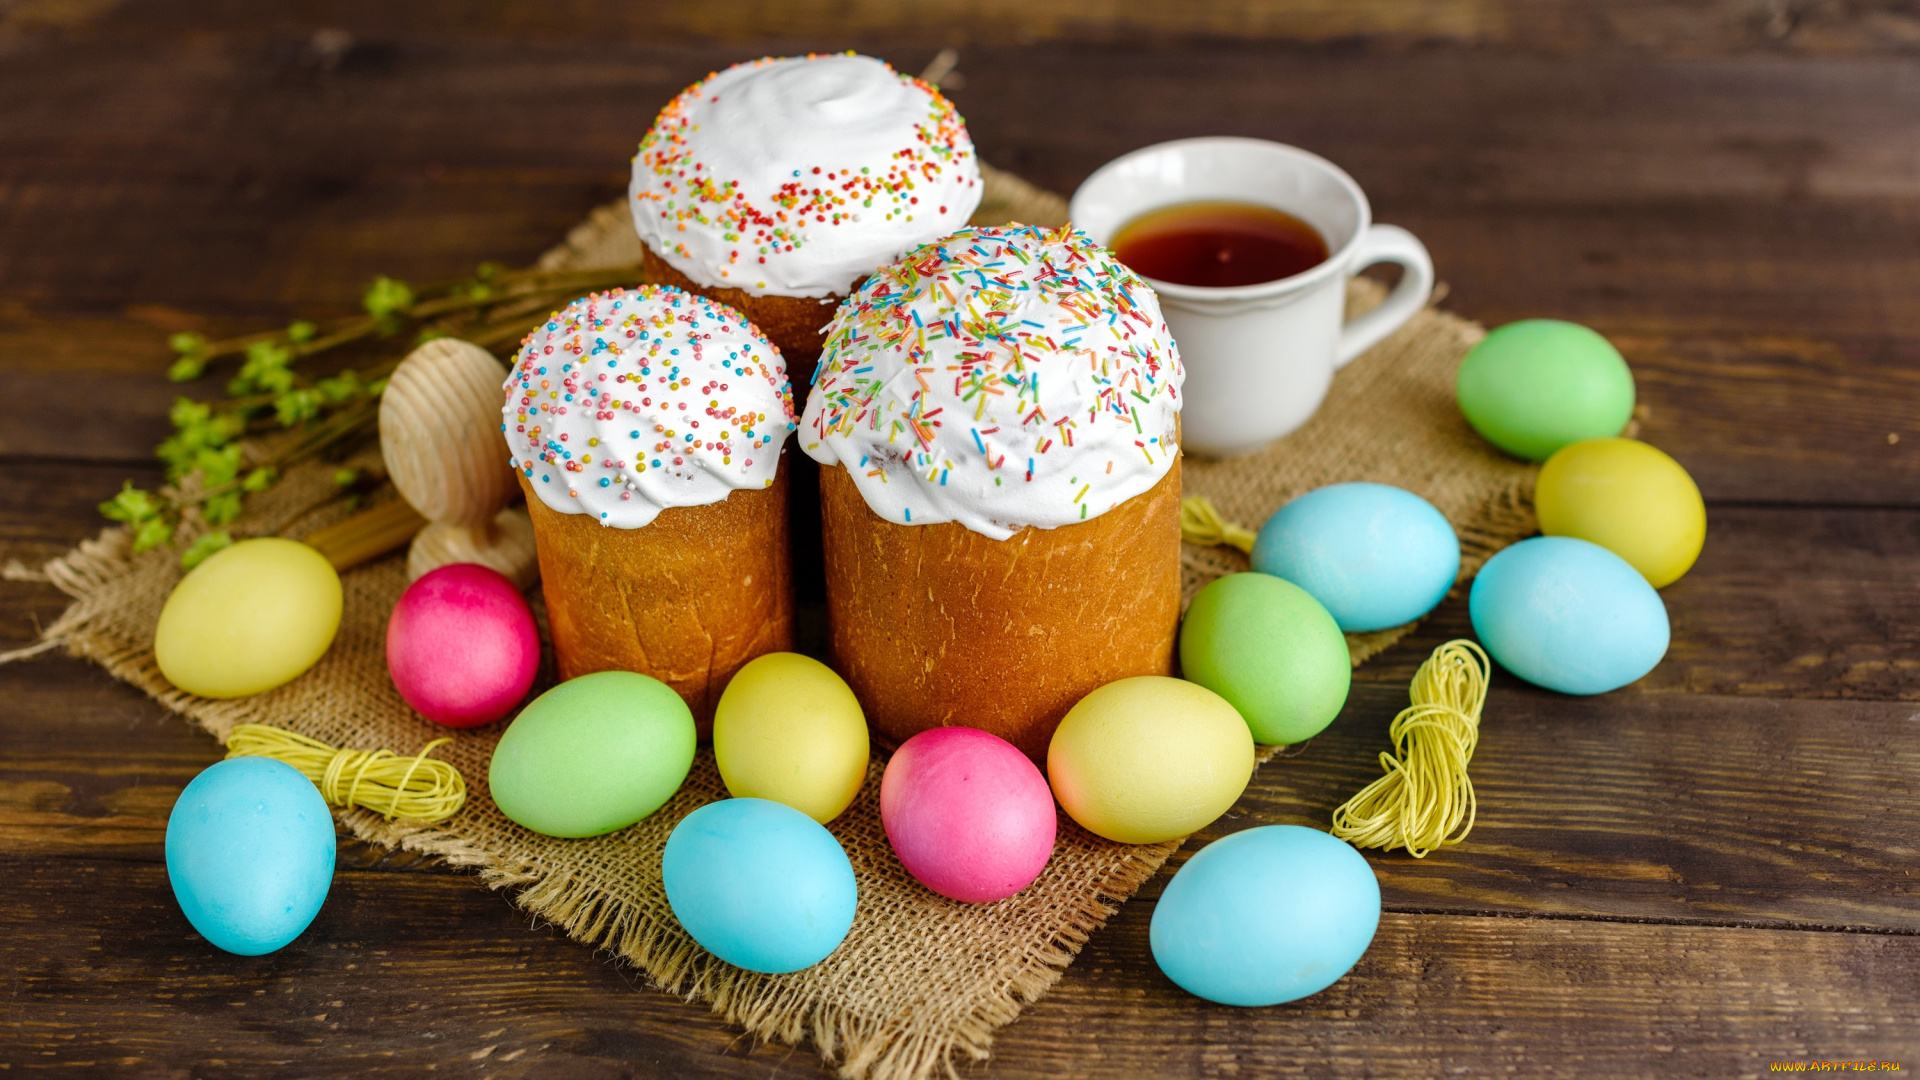 праздничные, пасха, яйца, colorful, happy, cake, кулич, wood, easter, eggs, decoration